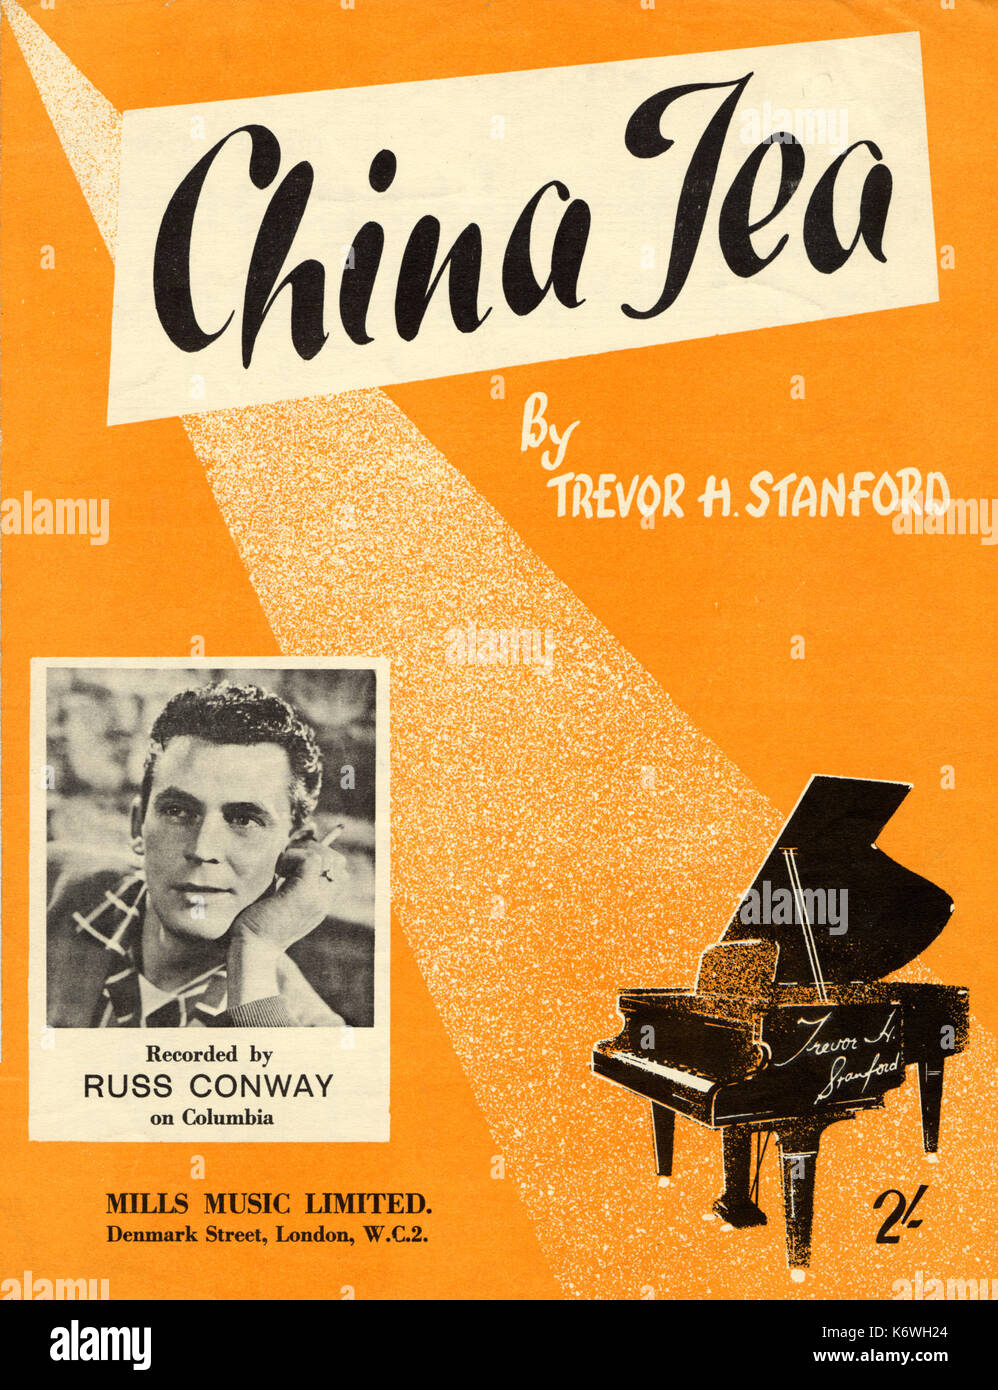 Russ Conway, Photo de couverture, Score Score 1959 Couverture de 'China Tea' par Trevor H Stanford. Publié par Mills Music Ltd, London, 1959Grand Piano Banque D'Images